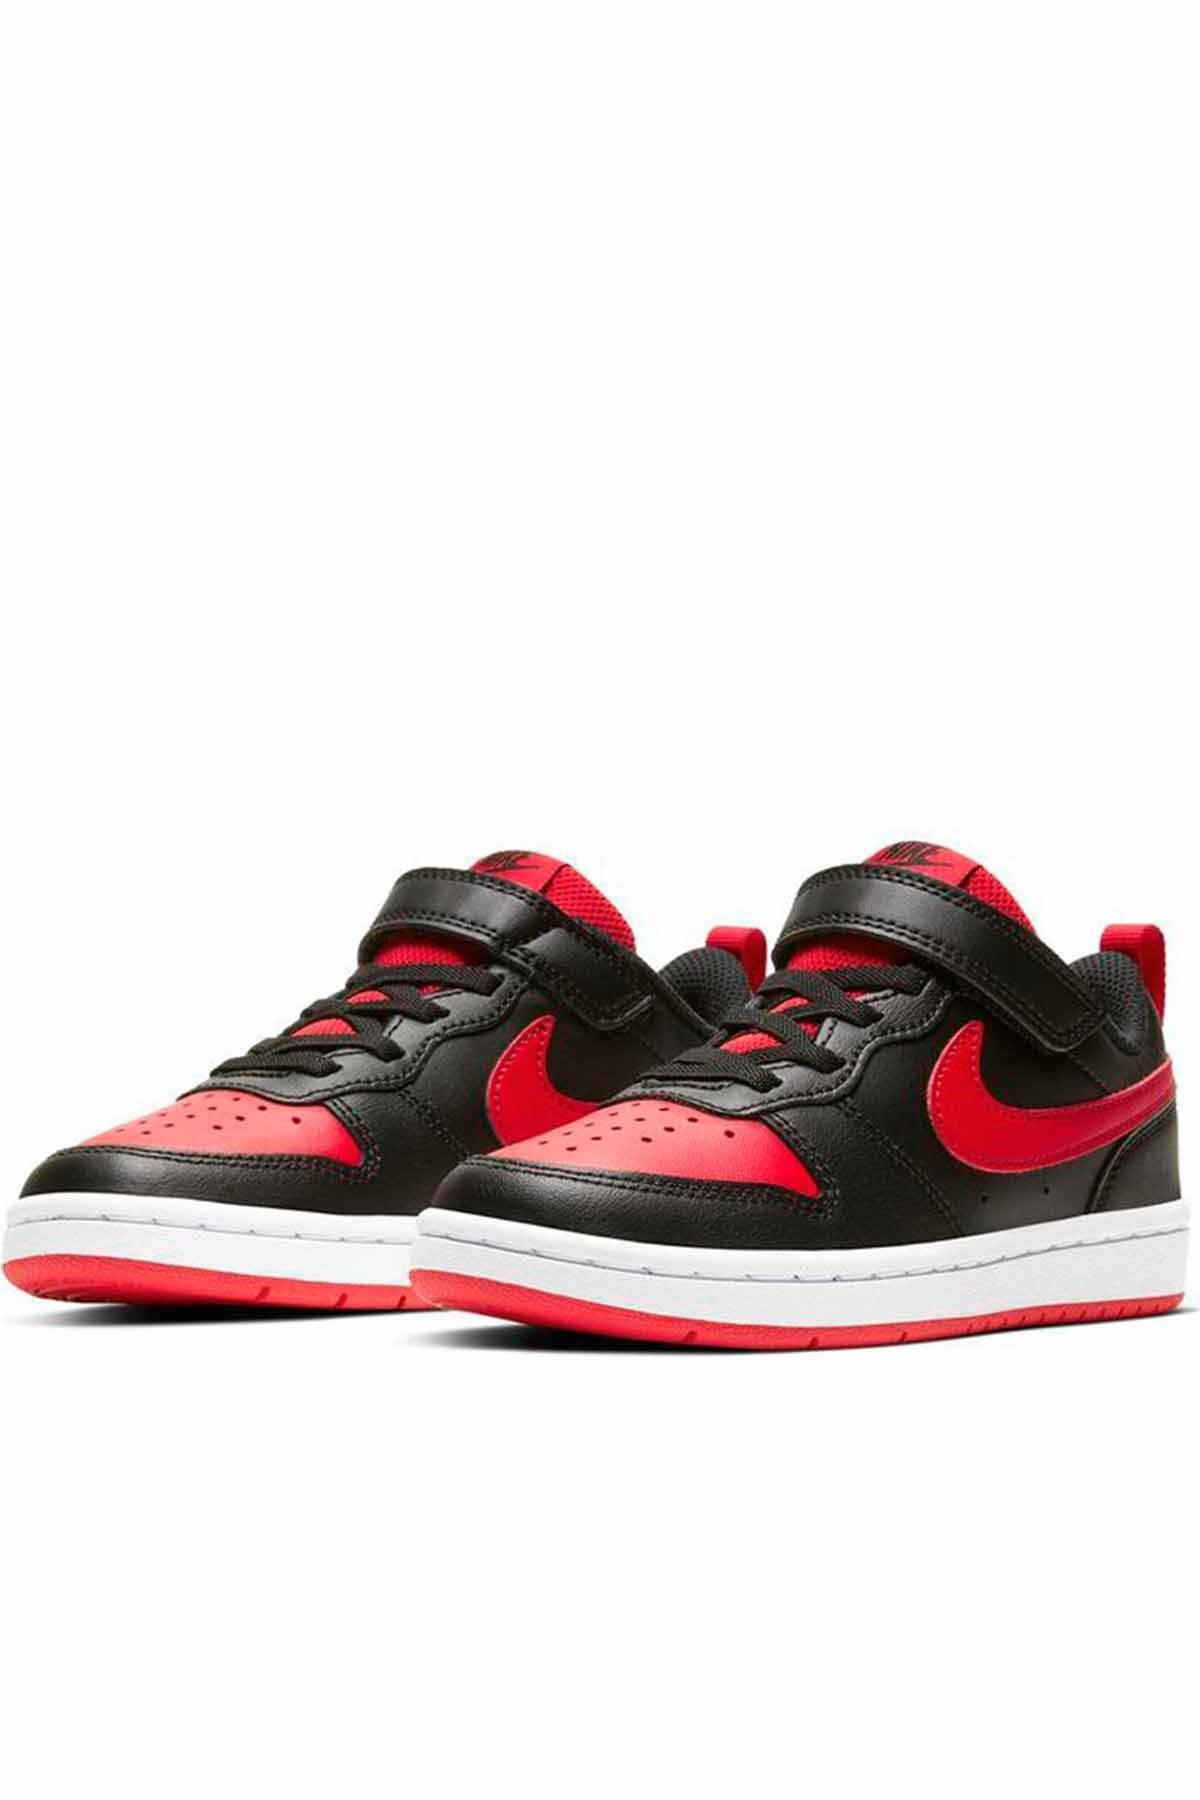 Nike Court Borough Low 2 (PSV) Çocuk Günlük Spor Ayakkabı Bq5451-007-siyah-krmz